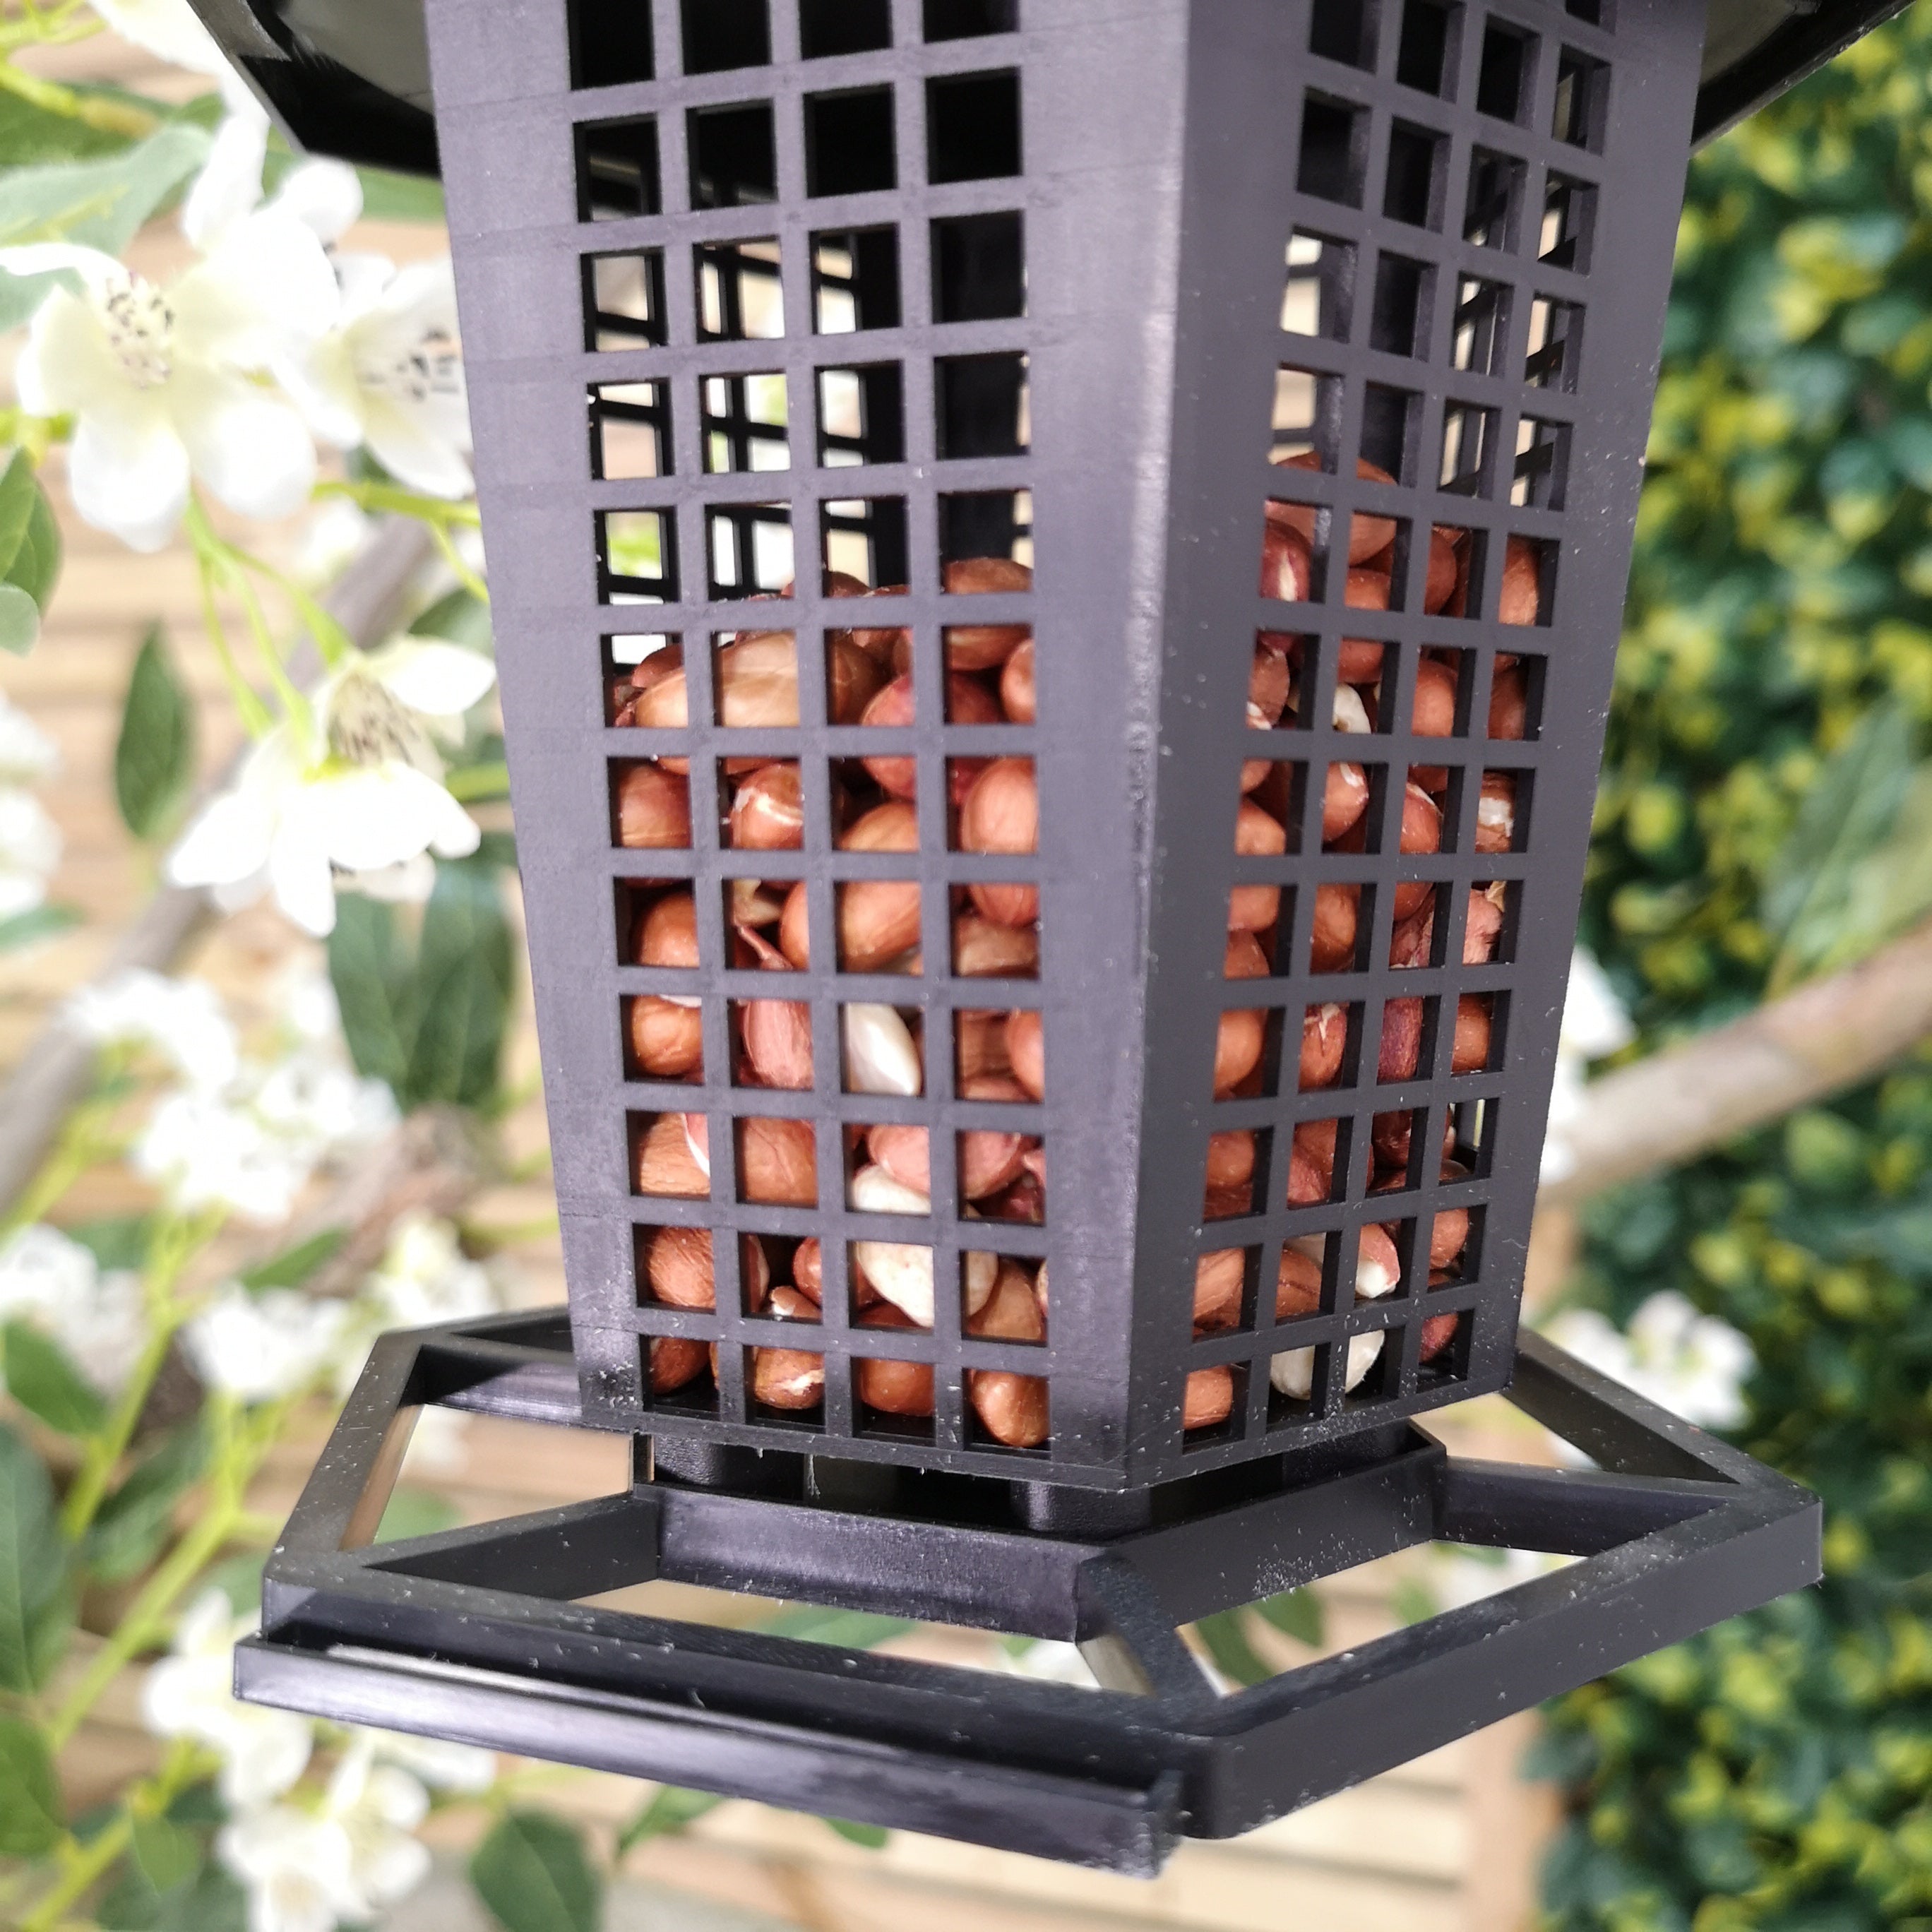 Black Hanging Plastic Lantern Peanut and Seed Feeder Garden Wild Bird